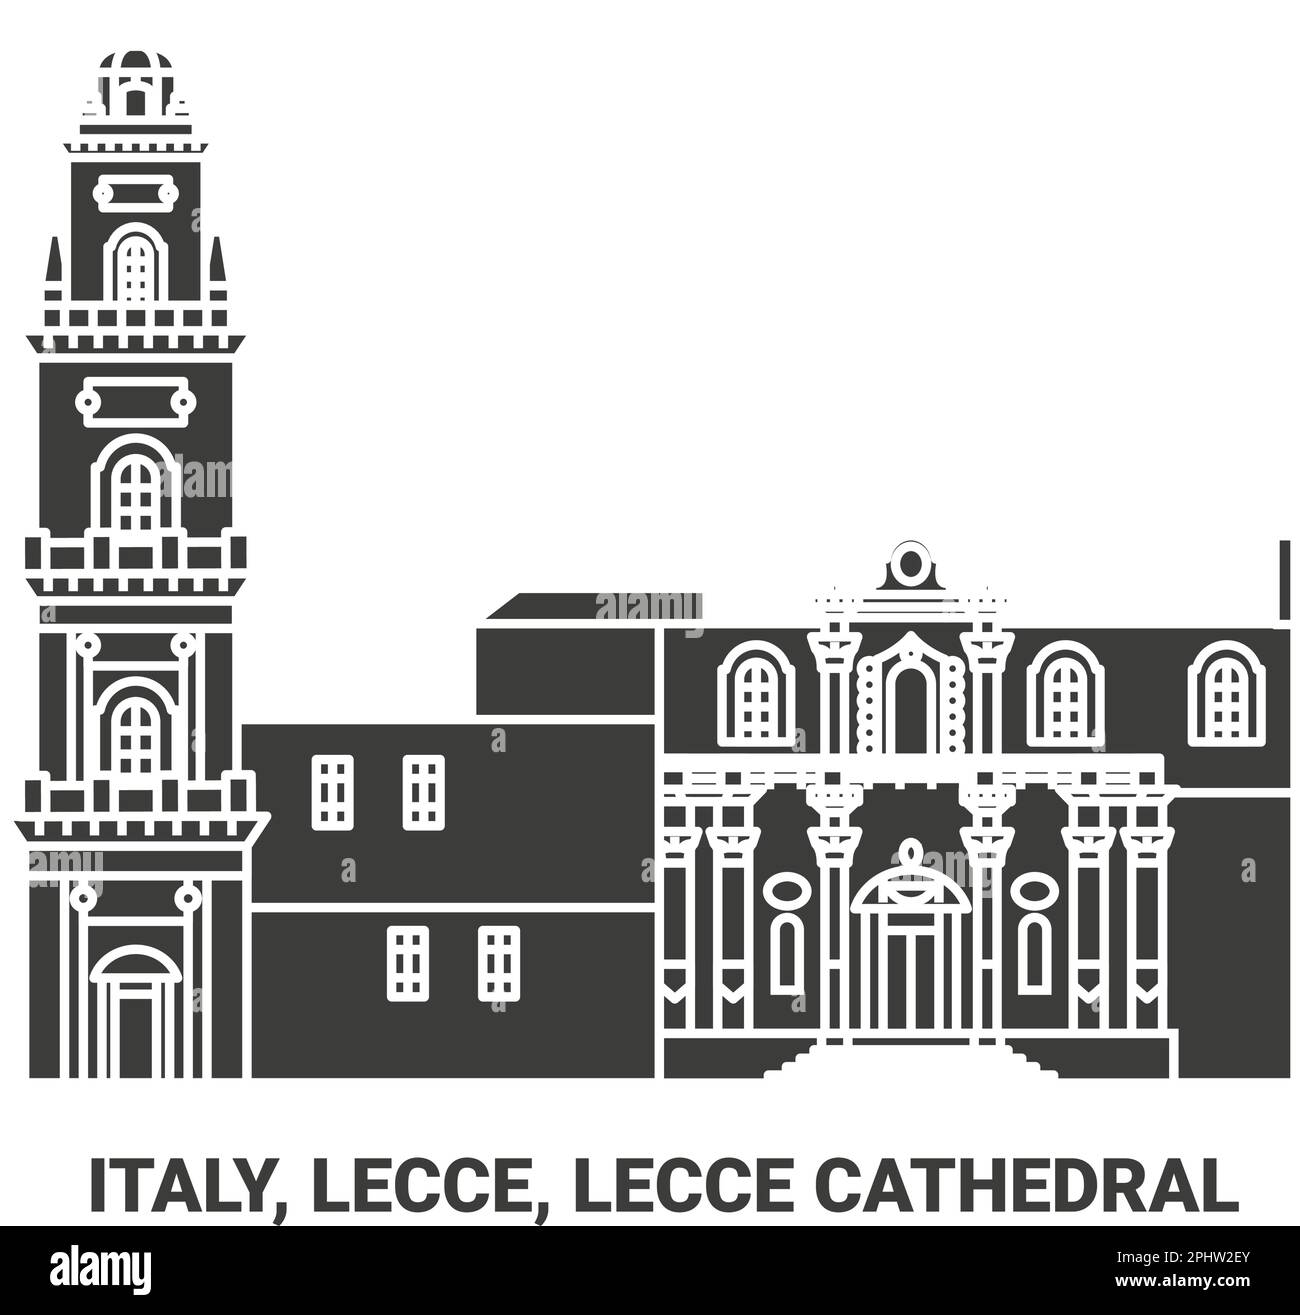 Italien, Lecce, Lecce Kathedrale Reise Wahrzeichen Vektordarstellung Stock Vektor